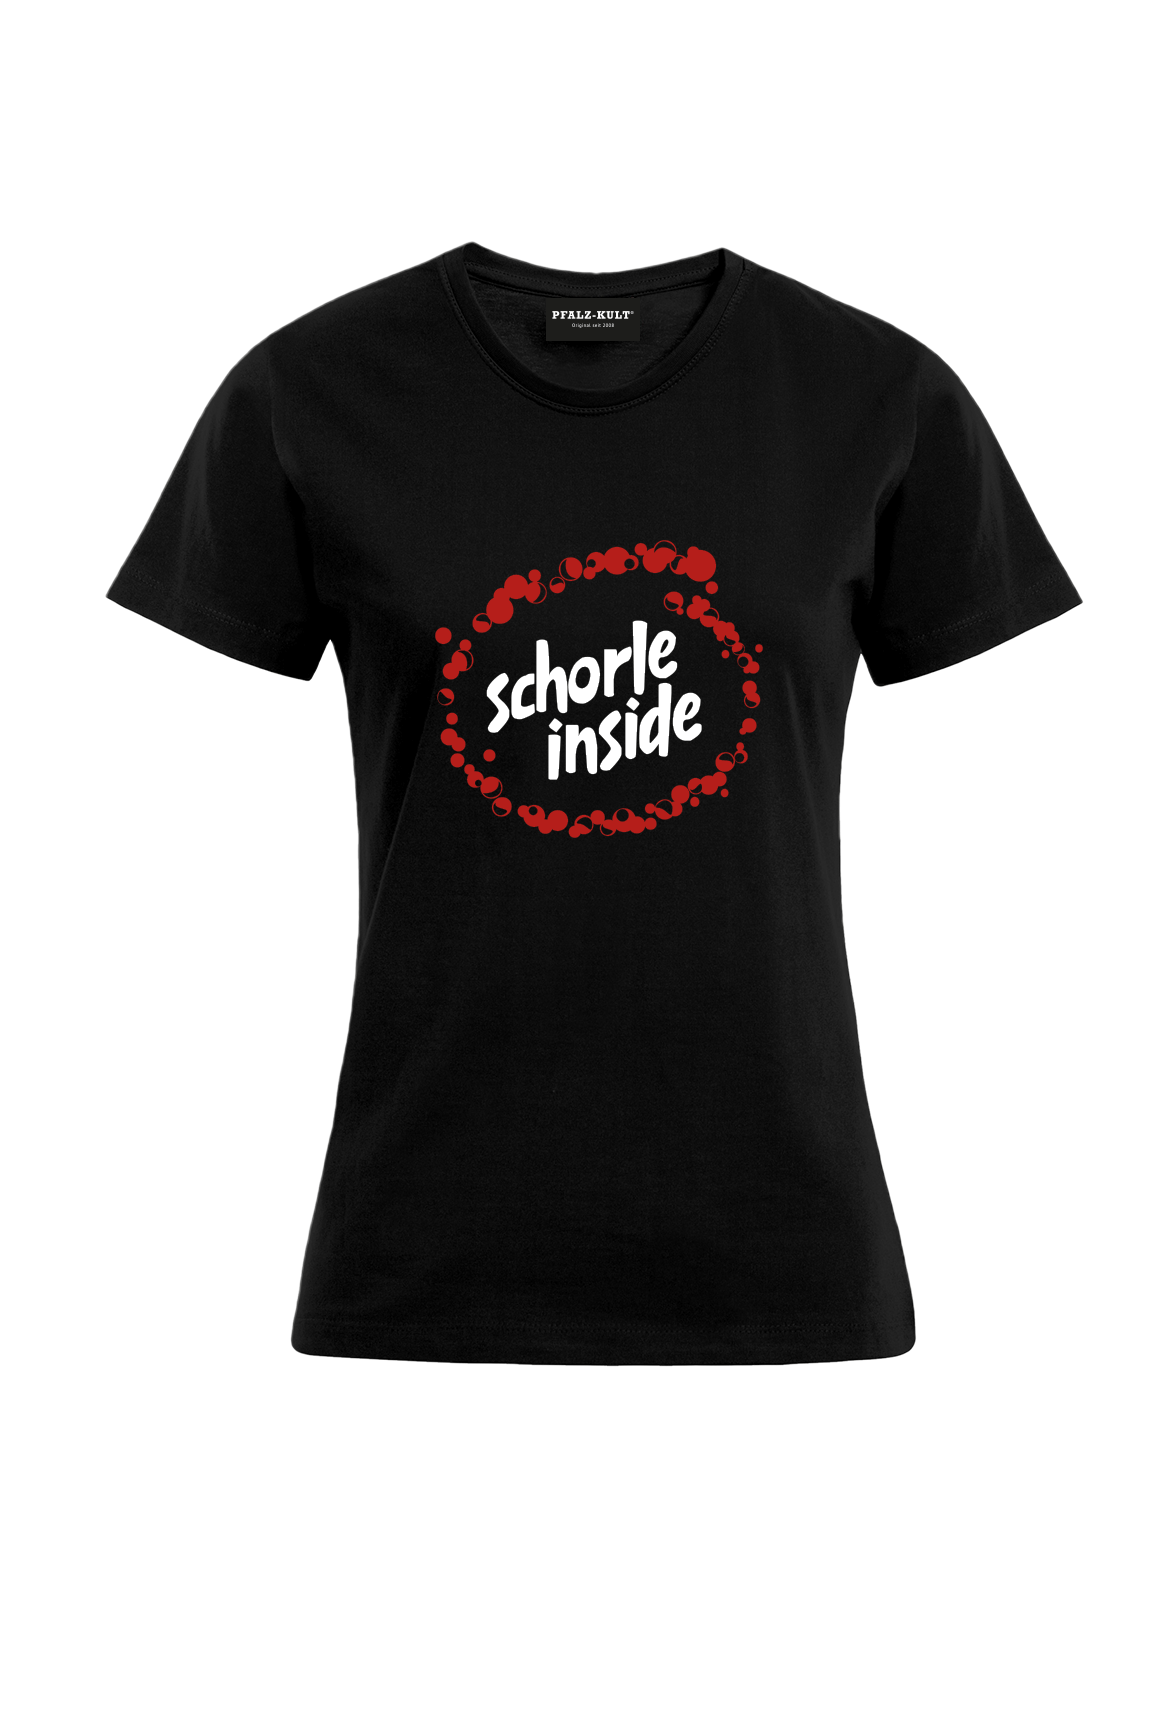 Schorle inside - Frauen T-shirt